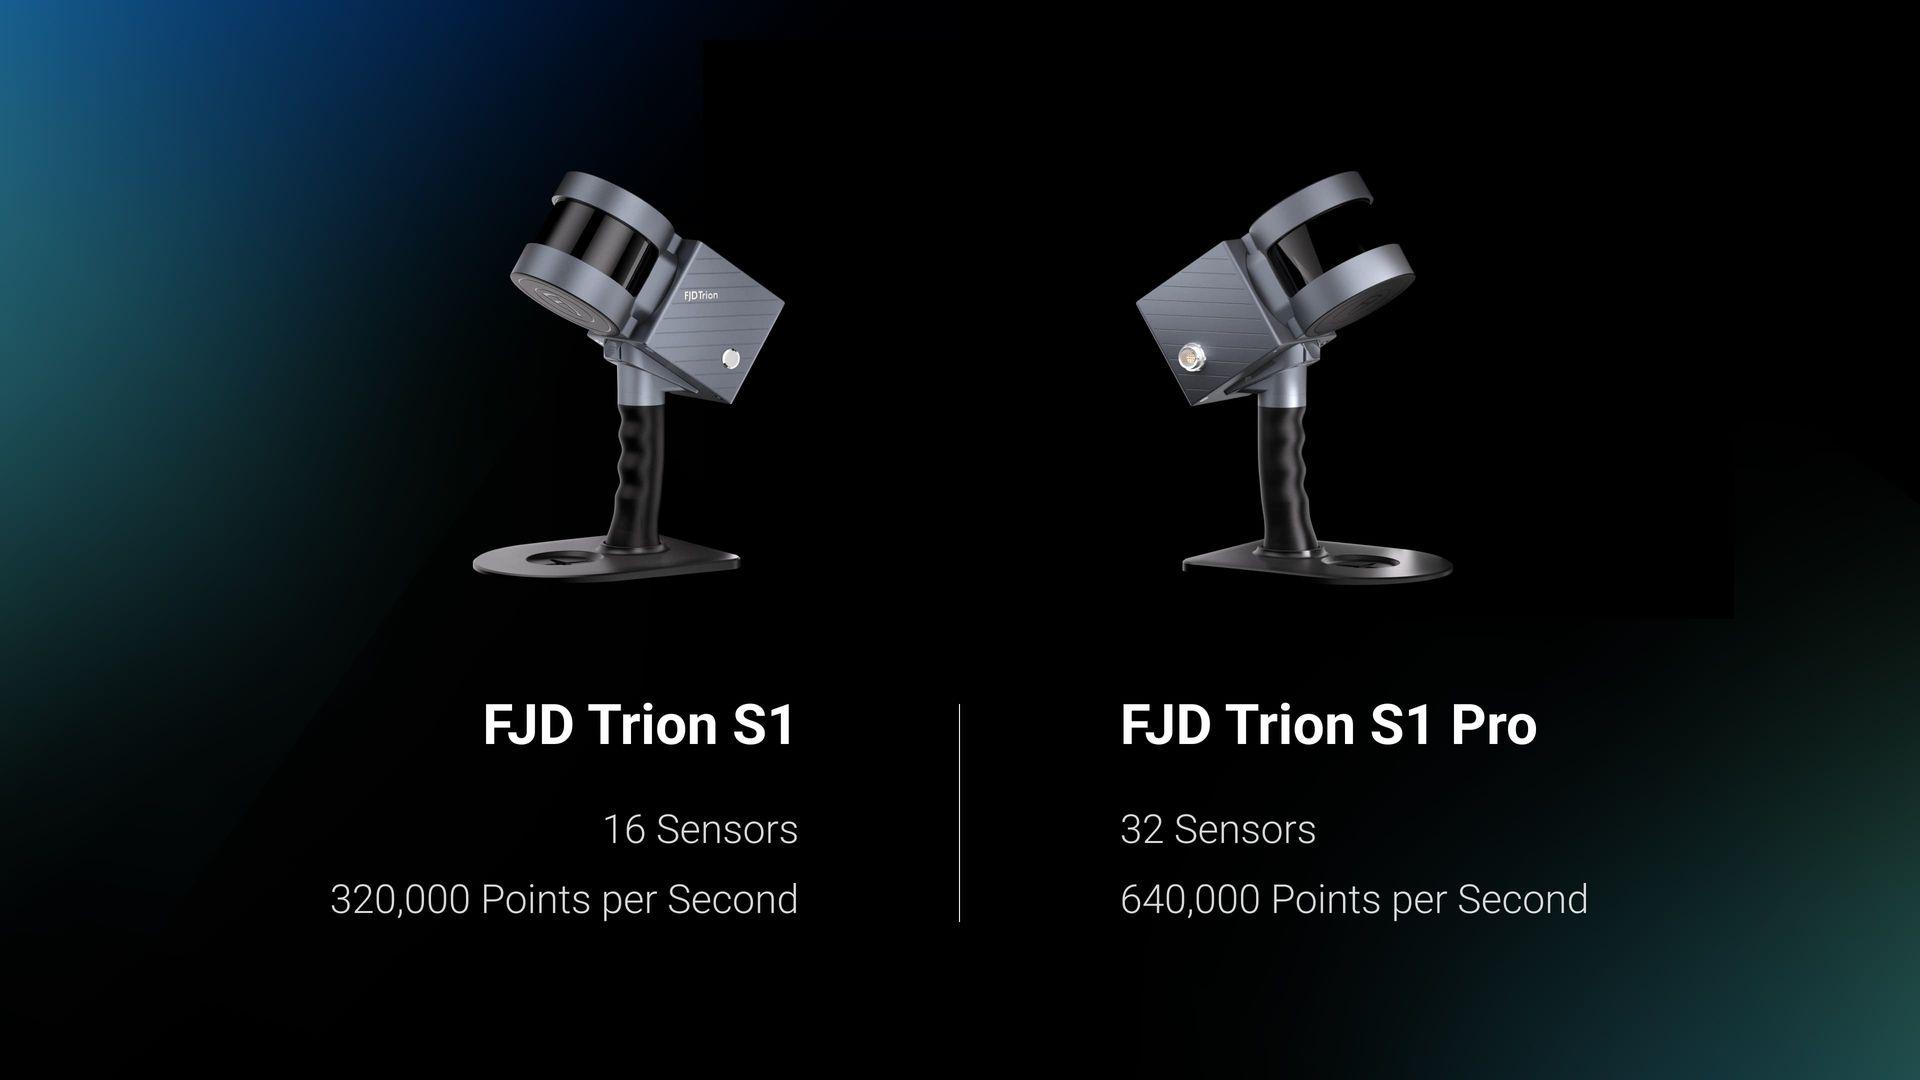 S1の最新バージョンである FJD Trion S1 Proはスキャン機能を強化します。 S1 Pro は、S1の軽量かつ優れた携帯性な設計を基づき、ハードウェアがアップグレードされましたため、さらに優れた精度と効率を実現できます。